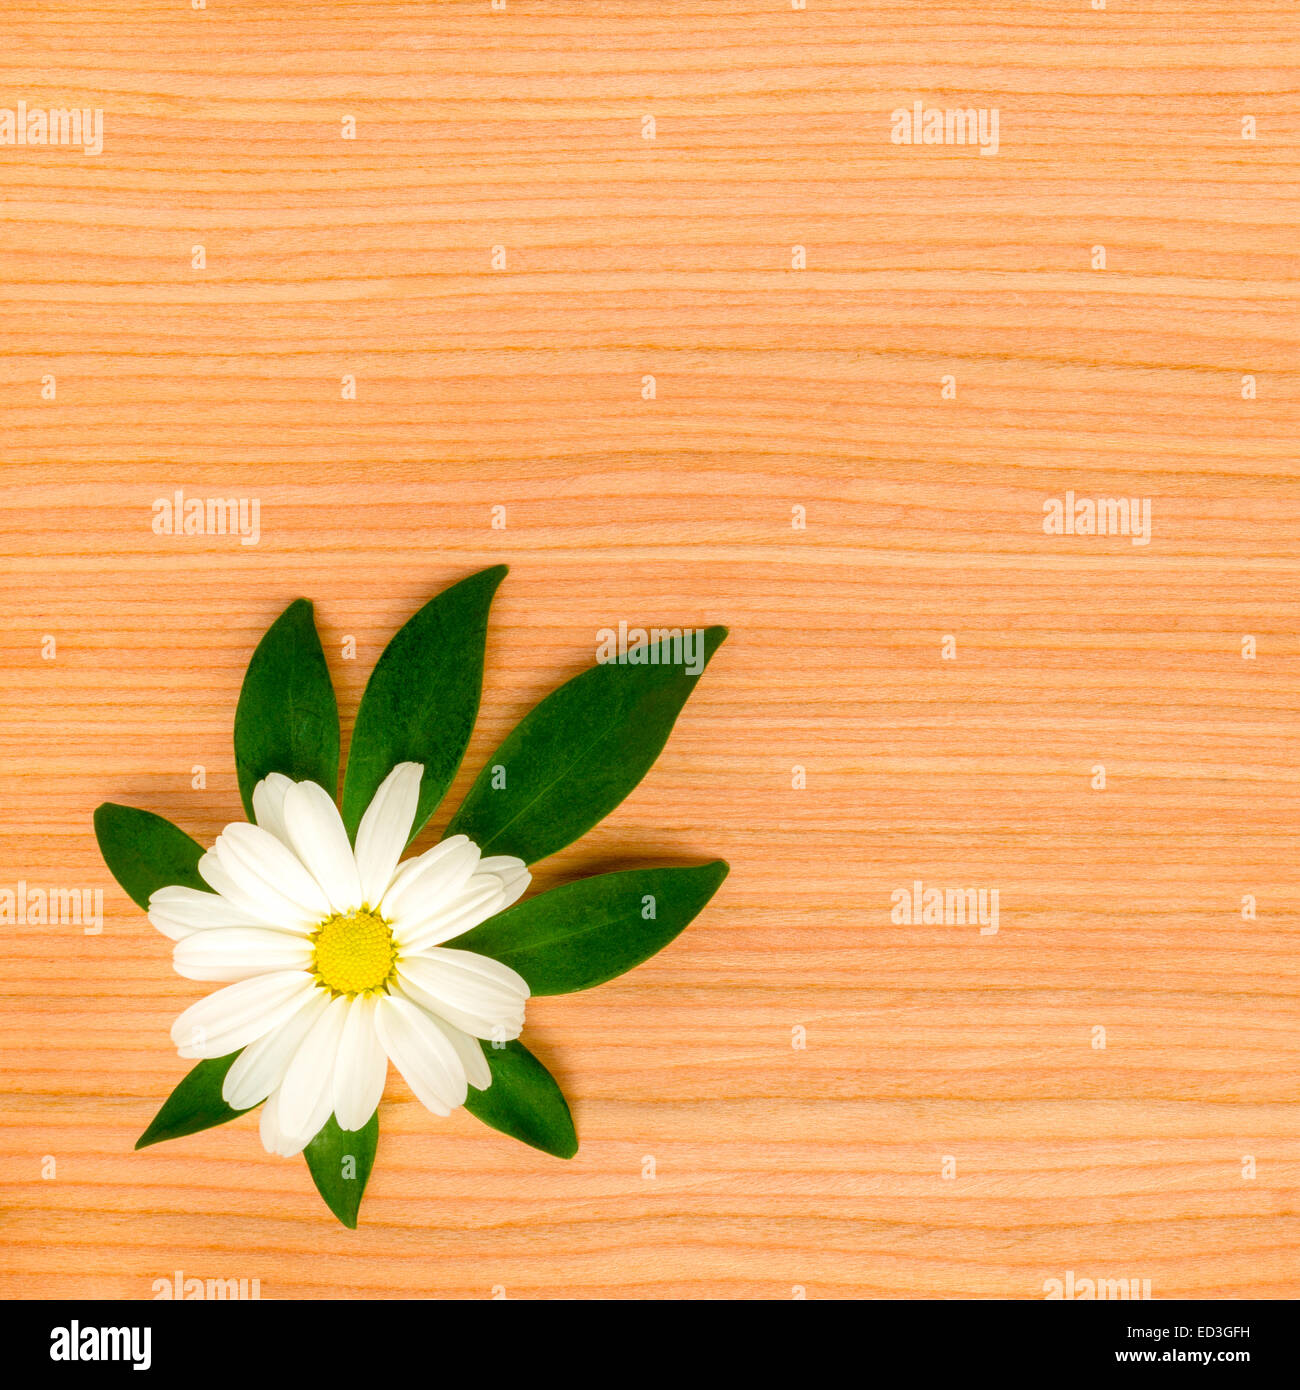 natürliche Maserung des Baum-Hintergrund mit gerahmten Kamille auf Blatt shefler Stockfoto